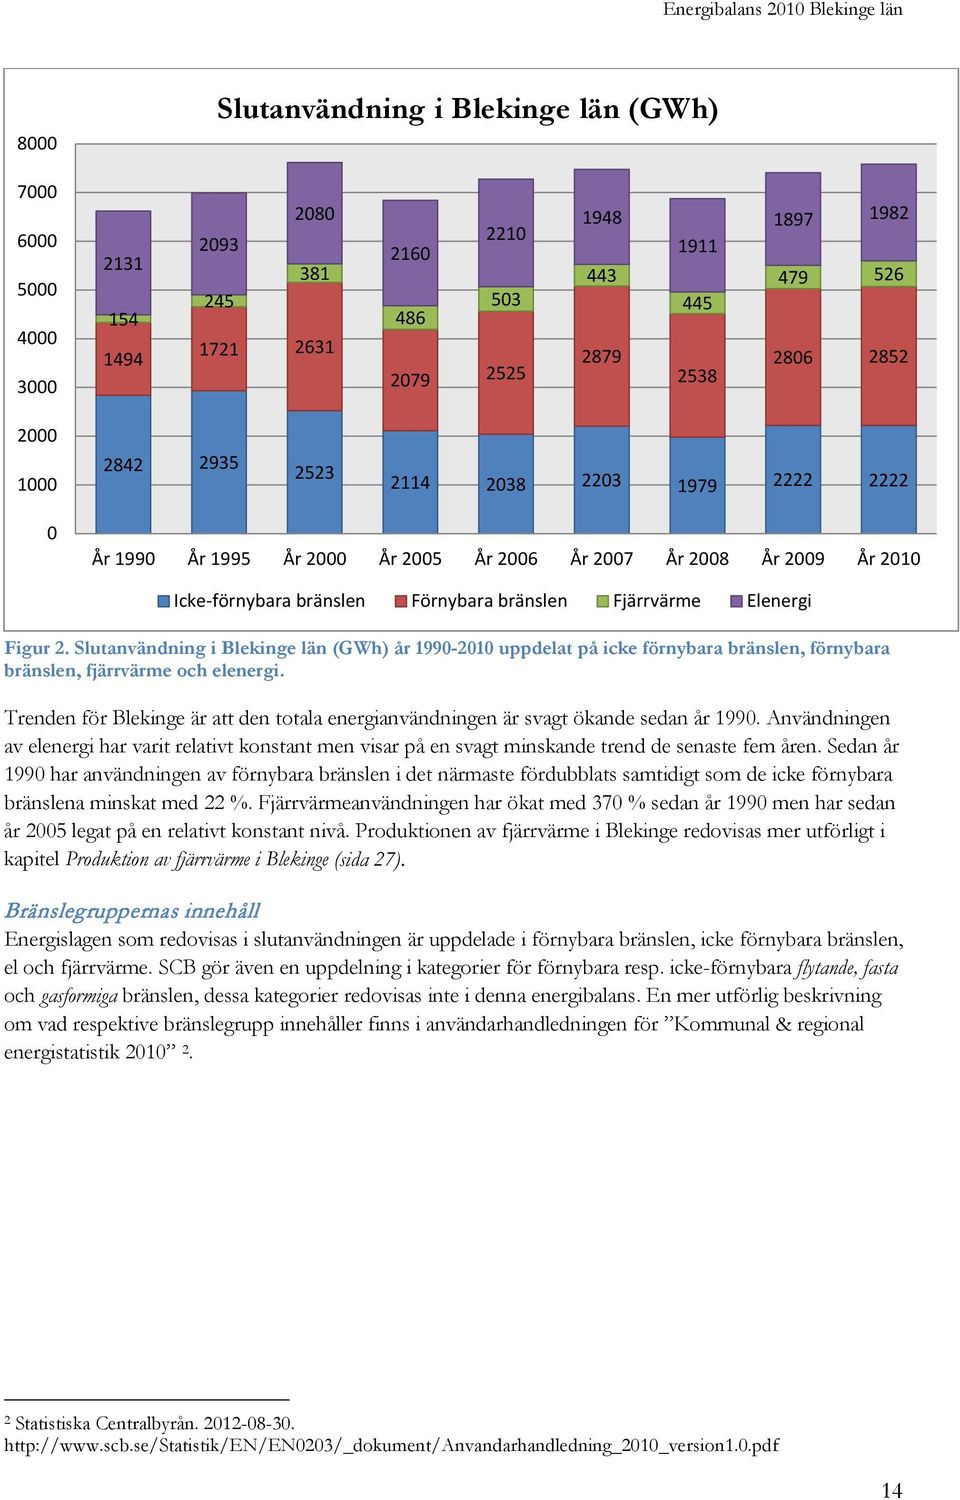 Slutanvändning i Blekinge län (GWh) år 1990-2010 uppdelat på icke förnybara bränslen, förnybara bränslen, fjärrvärme och elenergi.